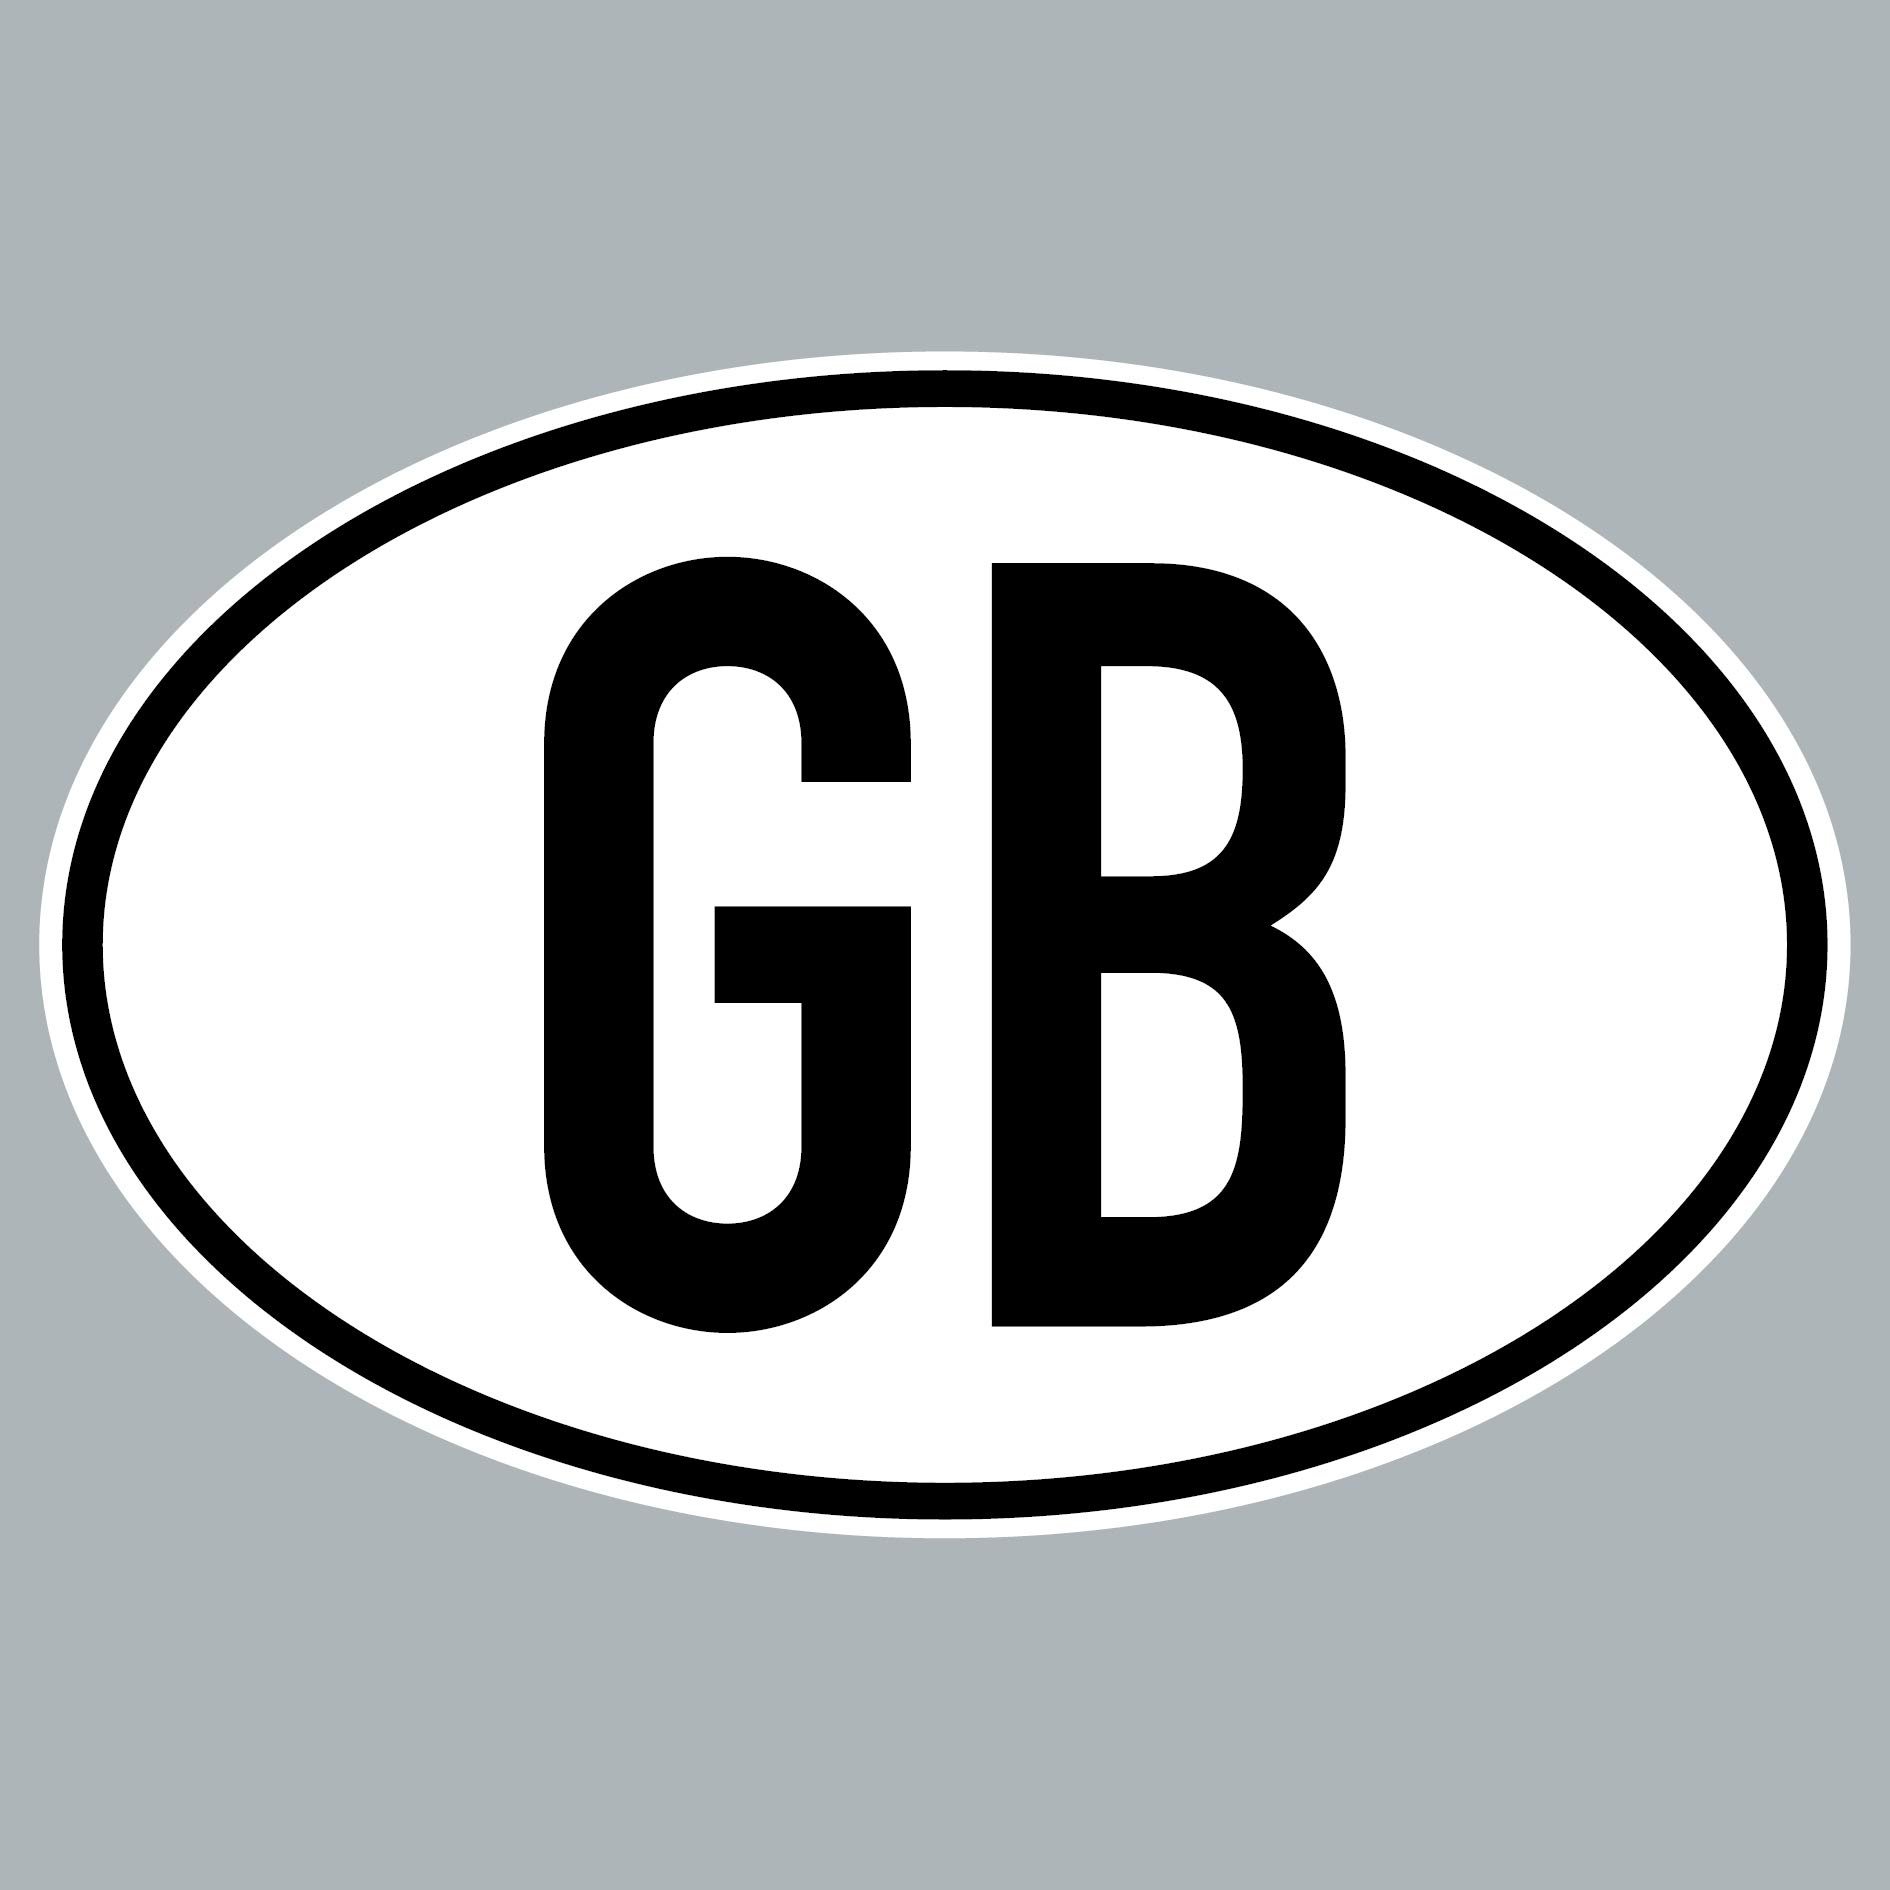 GreenIT GB Aufkleber Auto Sticker UK Grossbritannien Länderkennzeichen Zeichen Symbol 4061963019740 von GreenIT